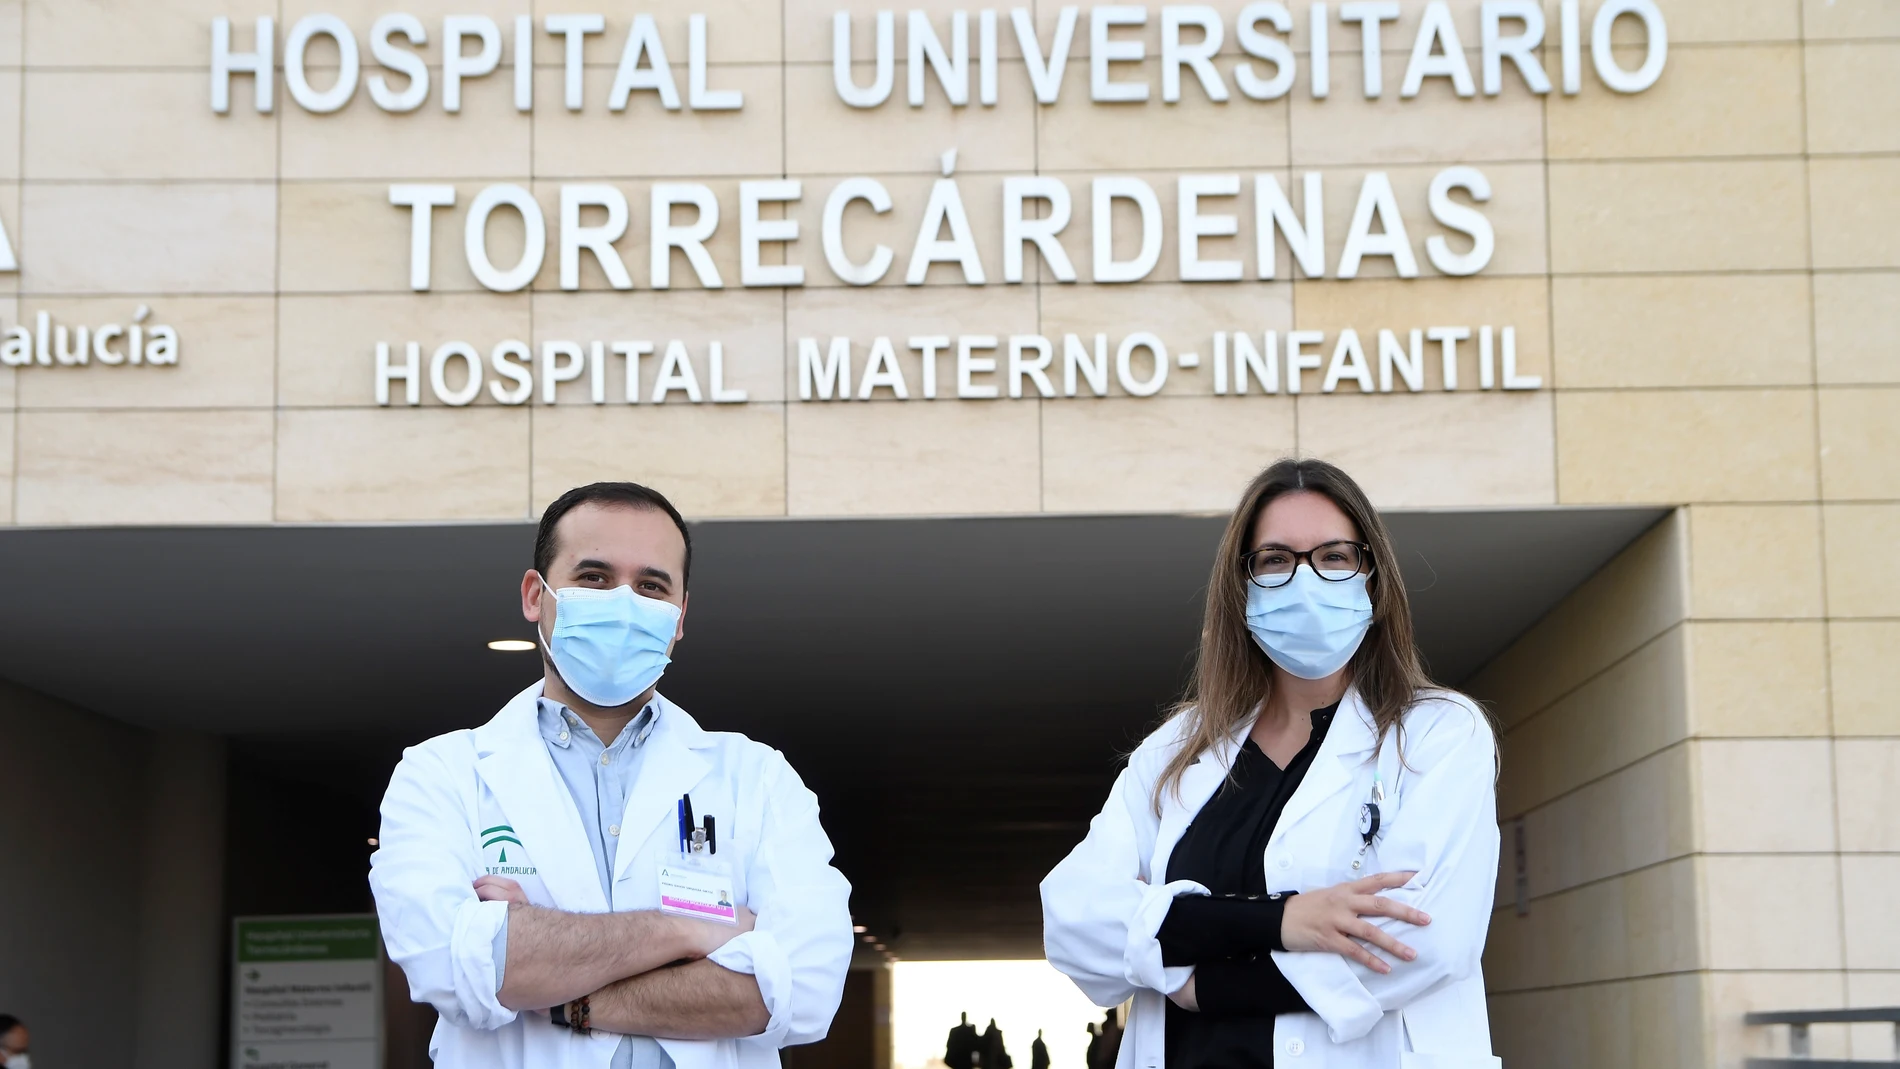 El biólogo Pedro David Urquiza y la patóloga María Elena López posan en el Hospital Universitario Torrecárdenas de Almería. EFE/ Carlos Barba